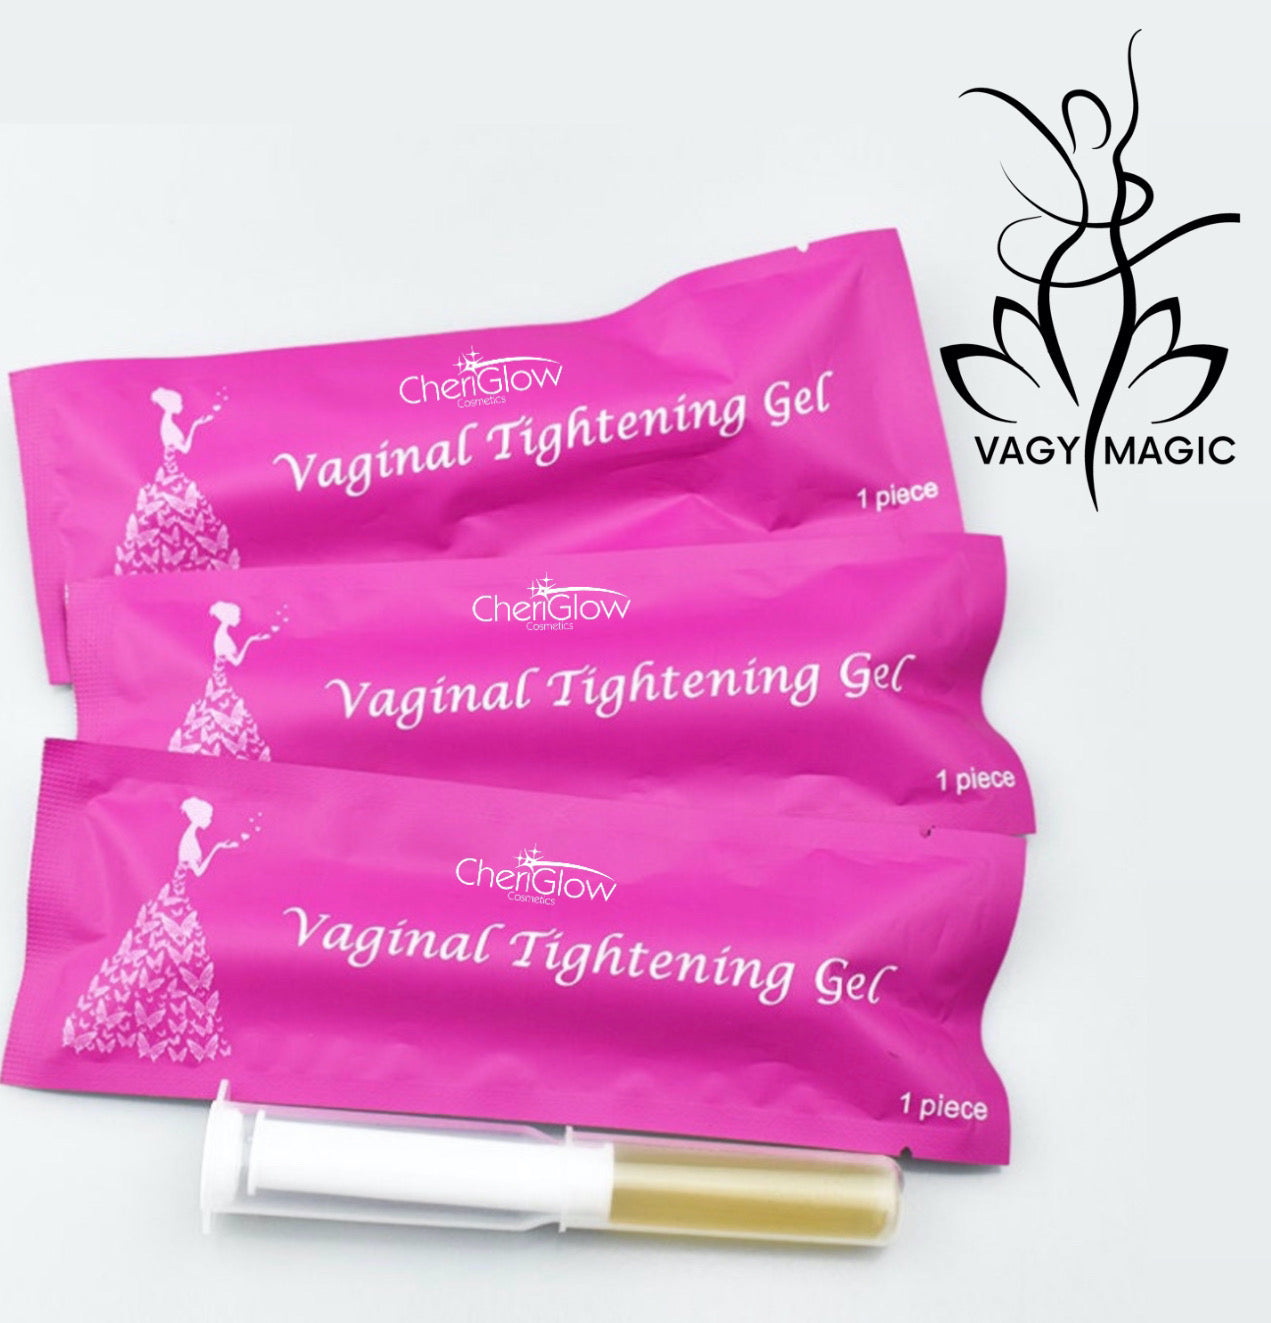 Vagy Magic - Vaginal Tightening Gel - 1 Application